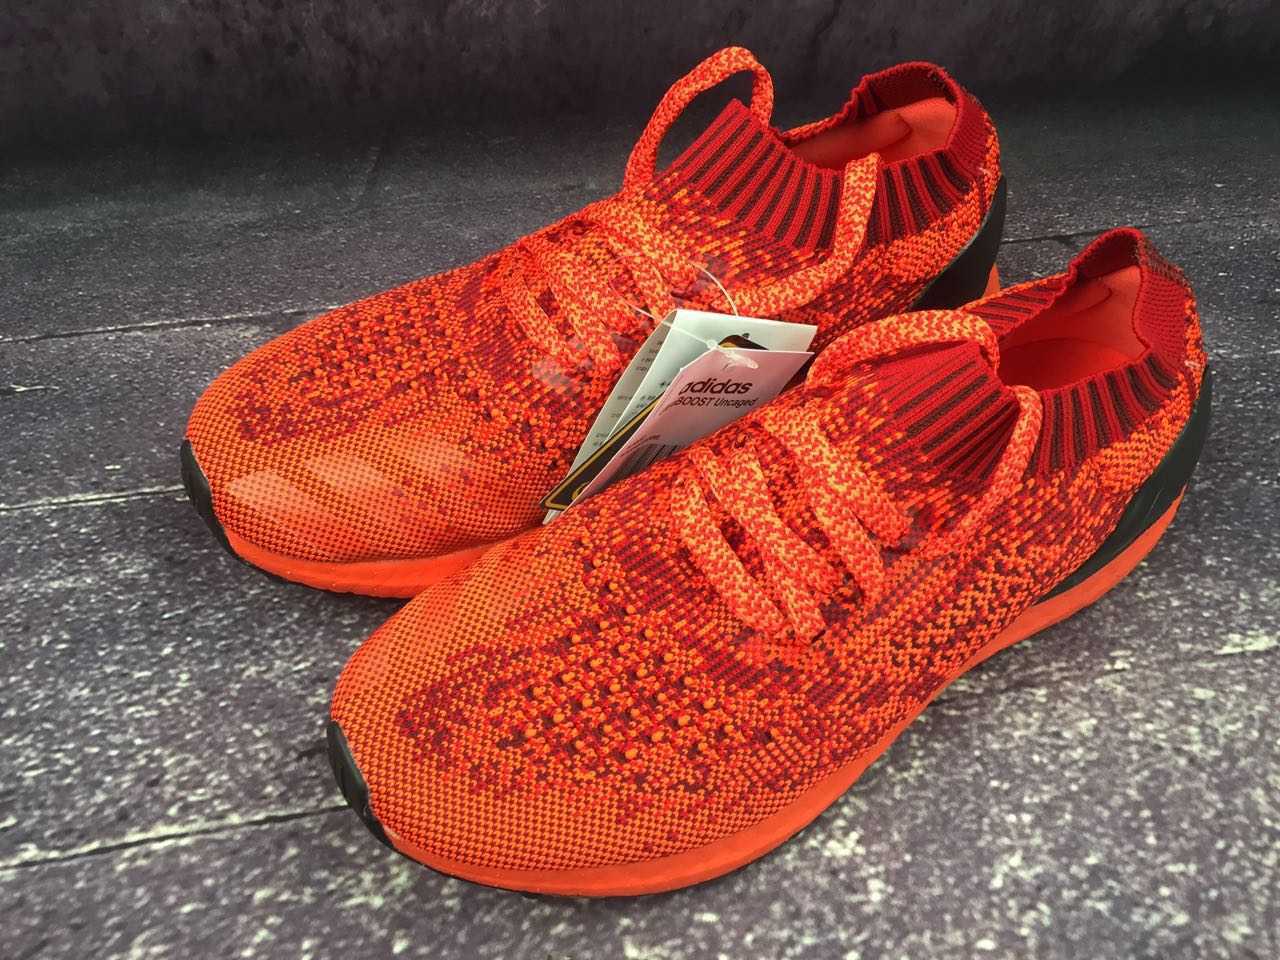 9正品新款真爆阿迪达斯男子运动鞋 Adidas Ultra boost Uncaged 袜子运动跑步鞋BB4678 红色